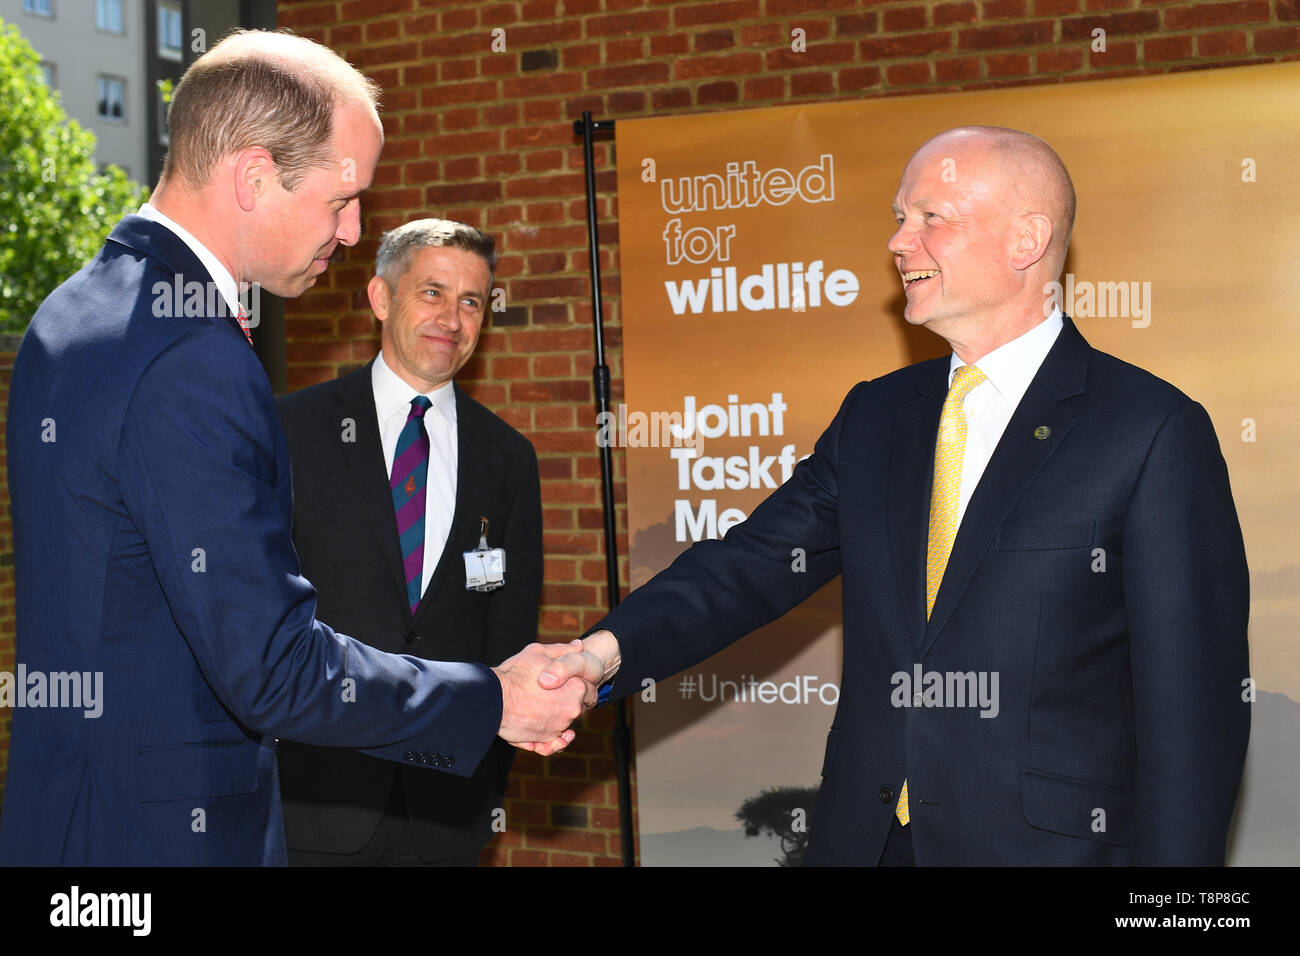 Der Herzog von Cambridge schüttelt Hände mit Iain Duncan Smith als zu einem Vereinigten kommt für Wildlife Joint Task Force Sitzung an der Royal Geographical Society in London. Stockfoto